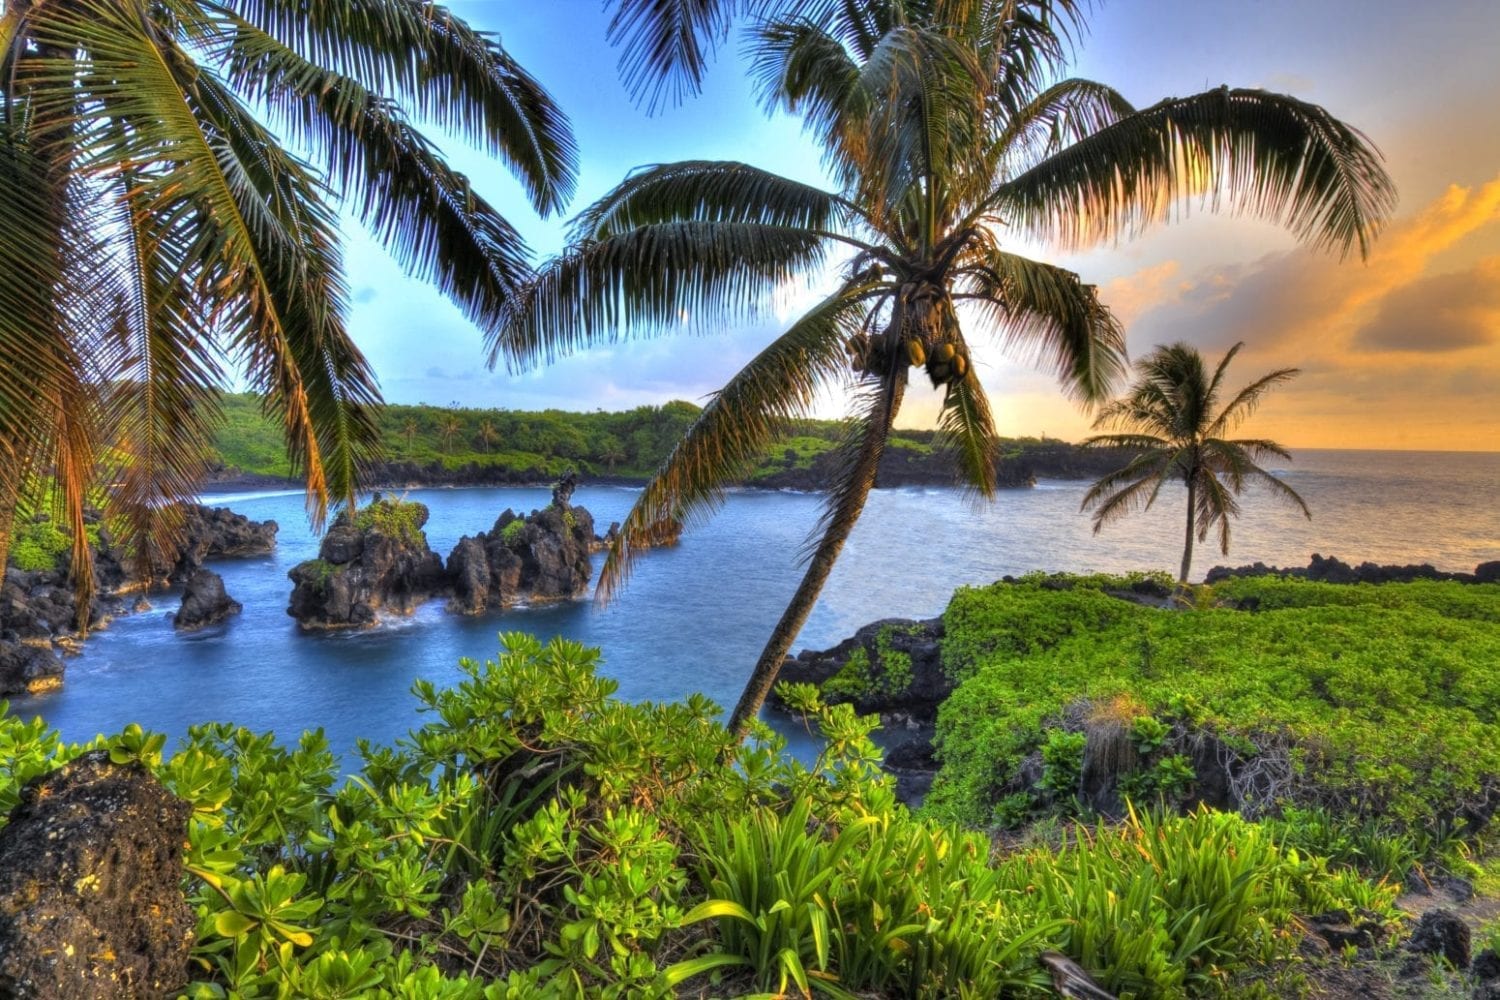 Waianapanapa Hana Maui - coconut laden palm trees above a crystal blue bay